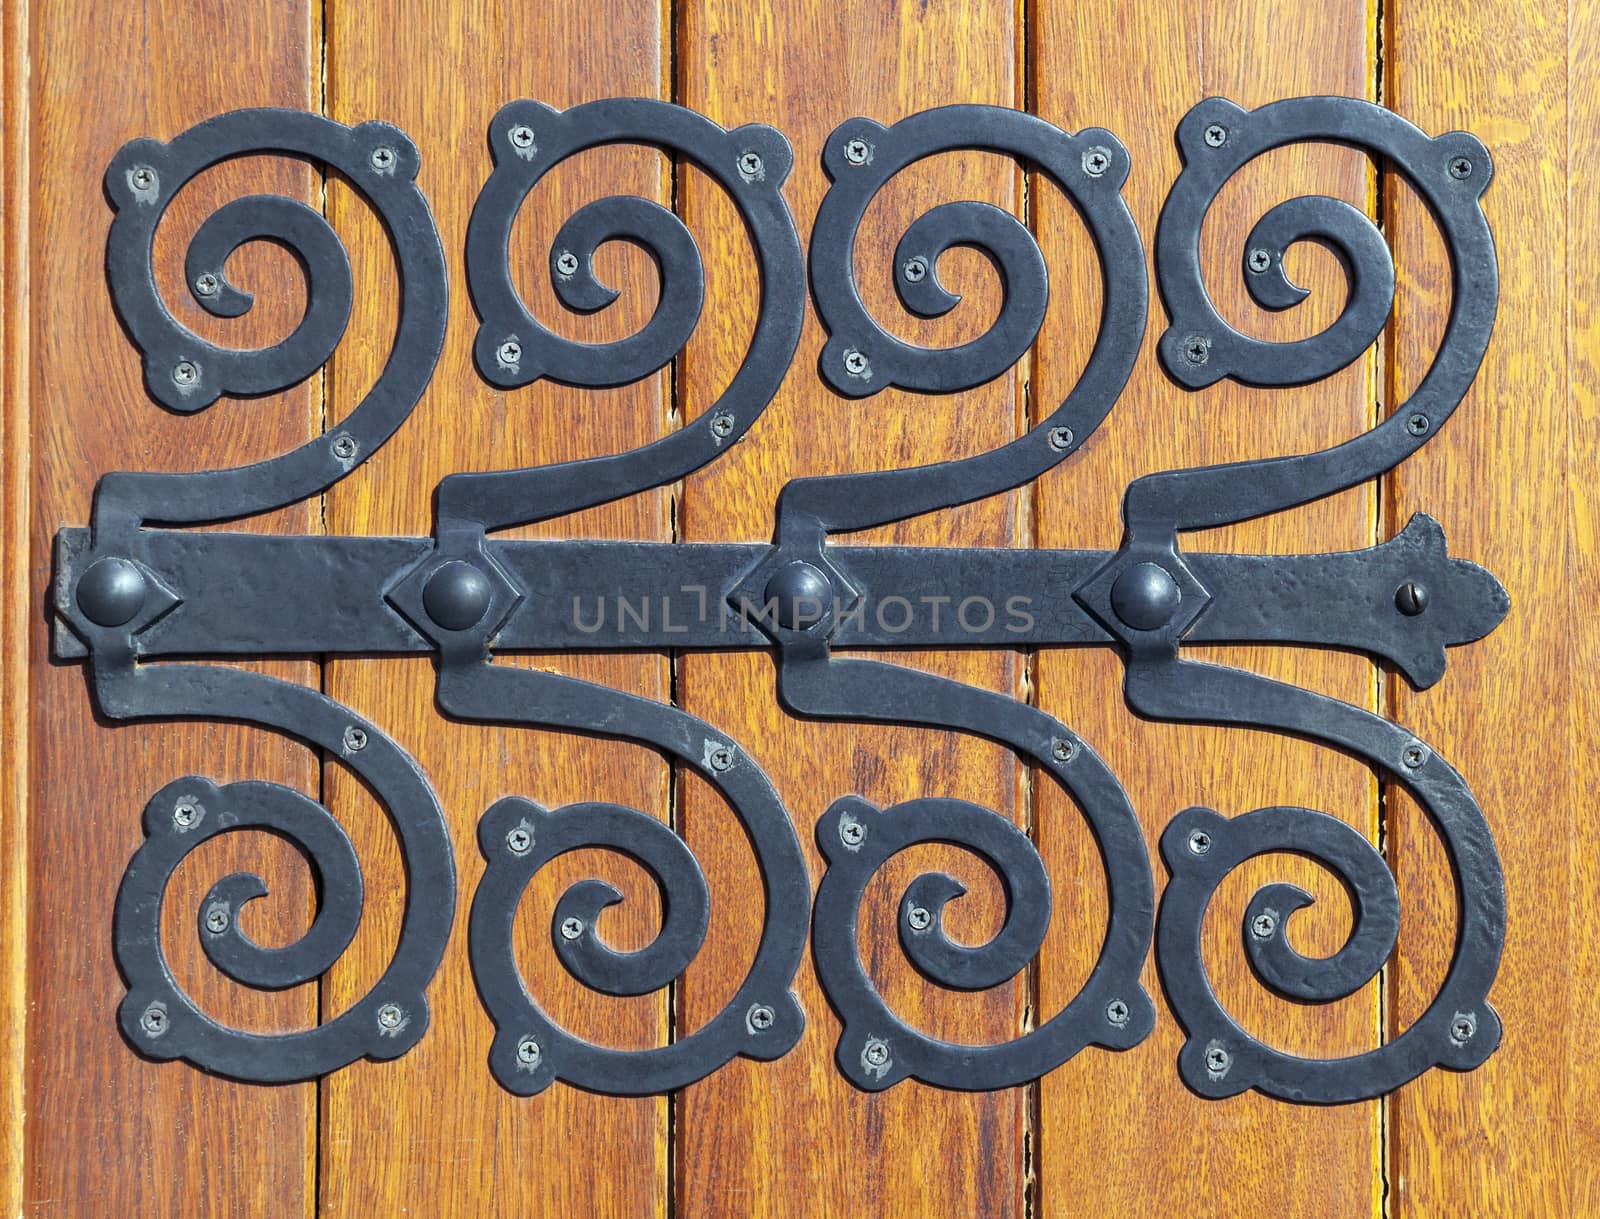 Decorative metal hinge on an old wooden door